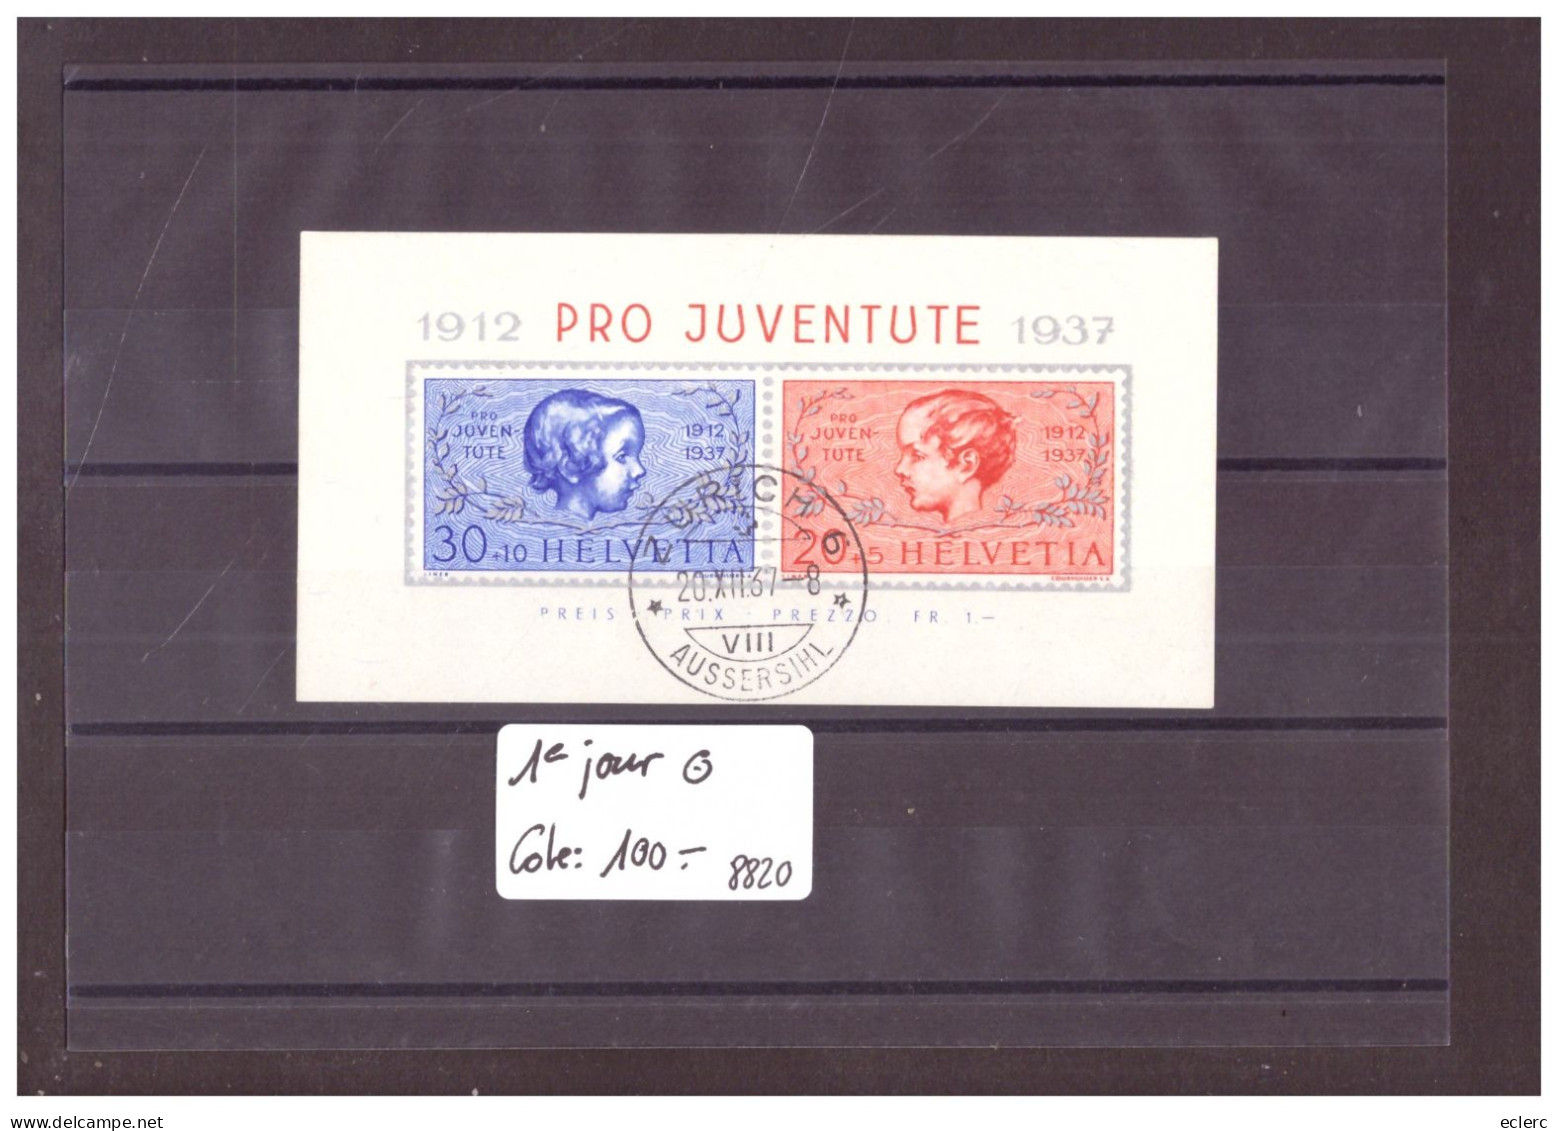 BLOC PRO JUVENTUTE 1937 OBLITERE PREMIER JOUR  - COTE: 100.- - Blocs & Feuillets